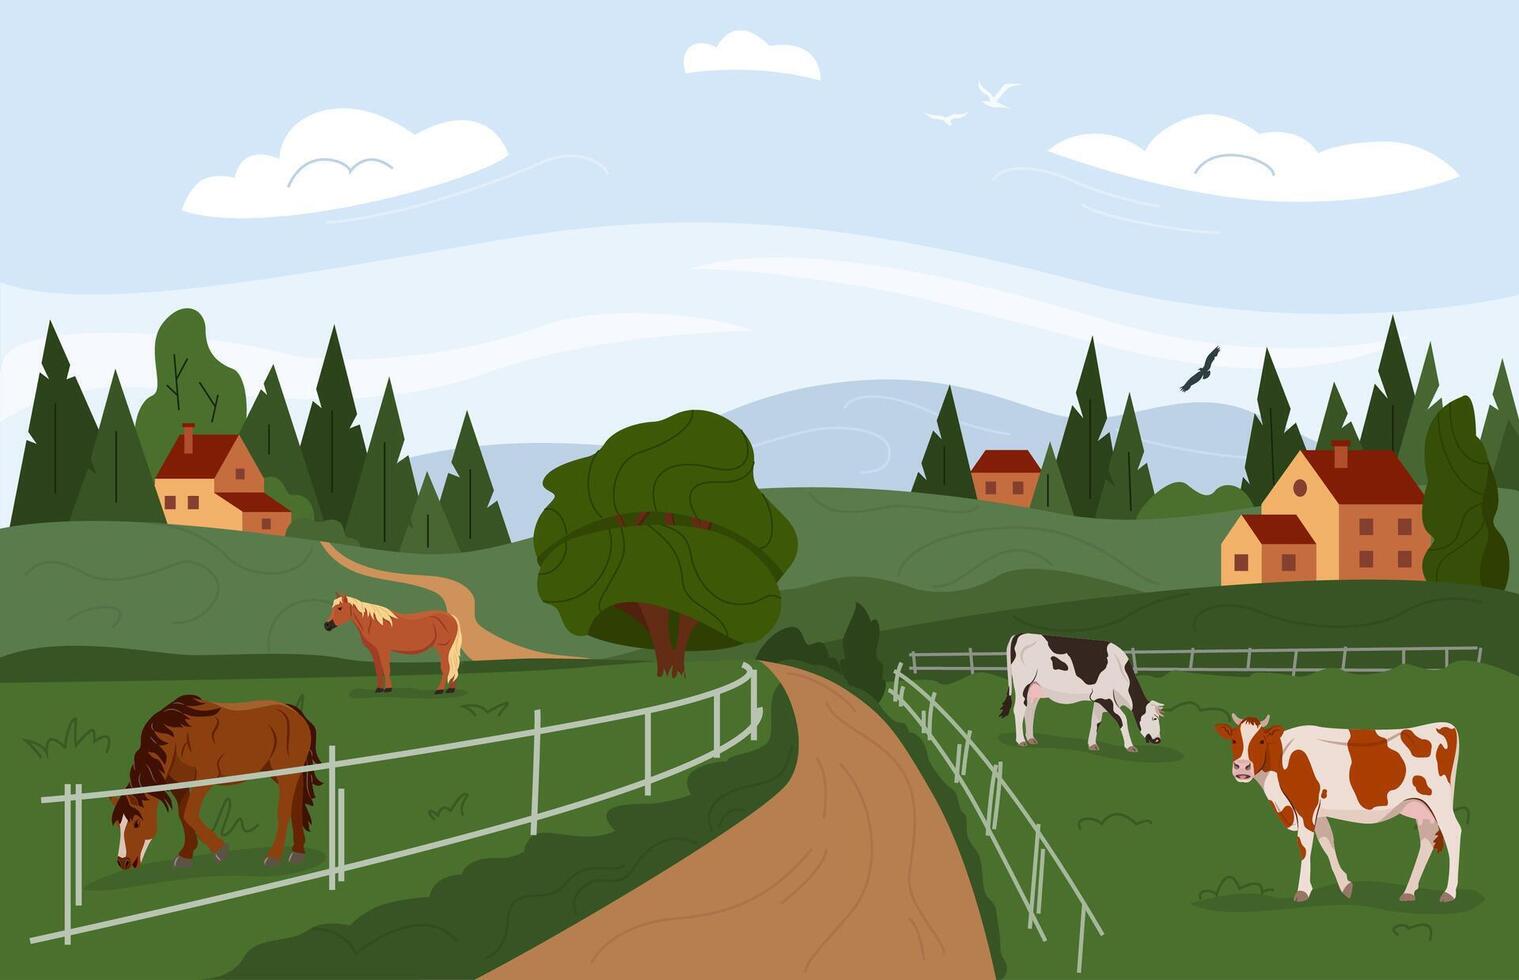 rural été paysage. campagne avec collines et village, vaches et les chevaux. ferme champavec animaux. vecteur illustration.